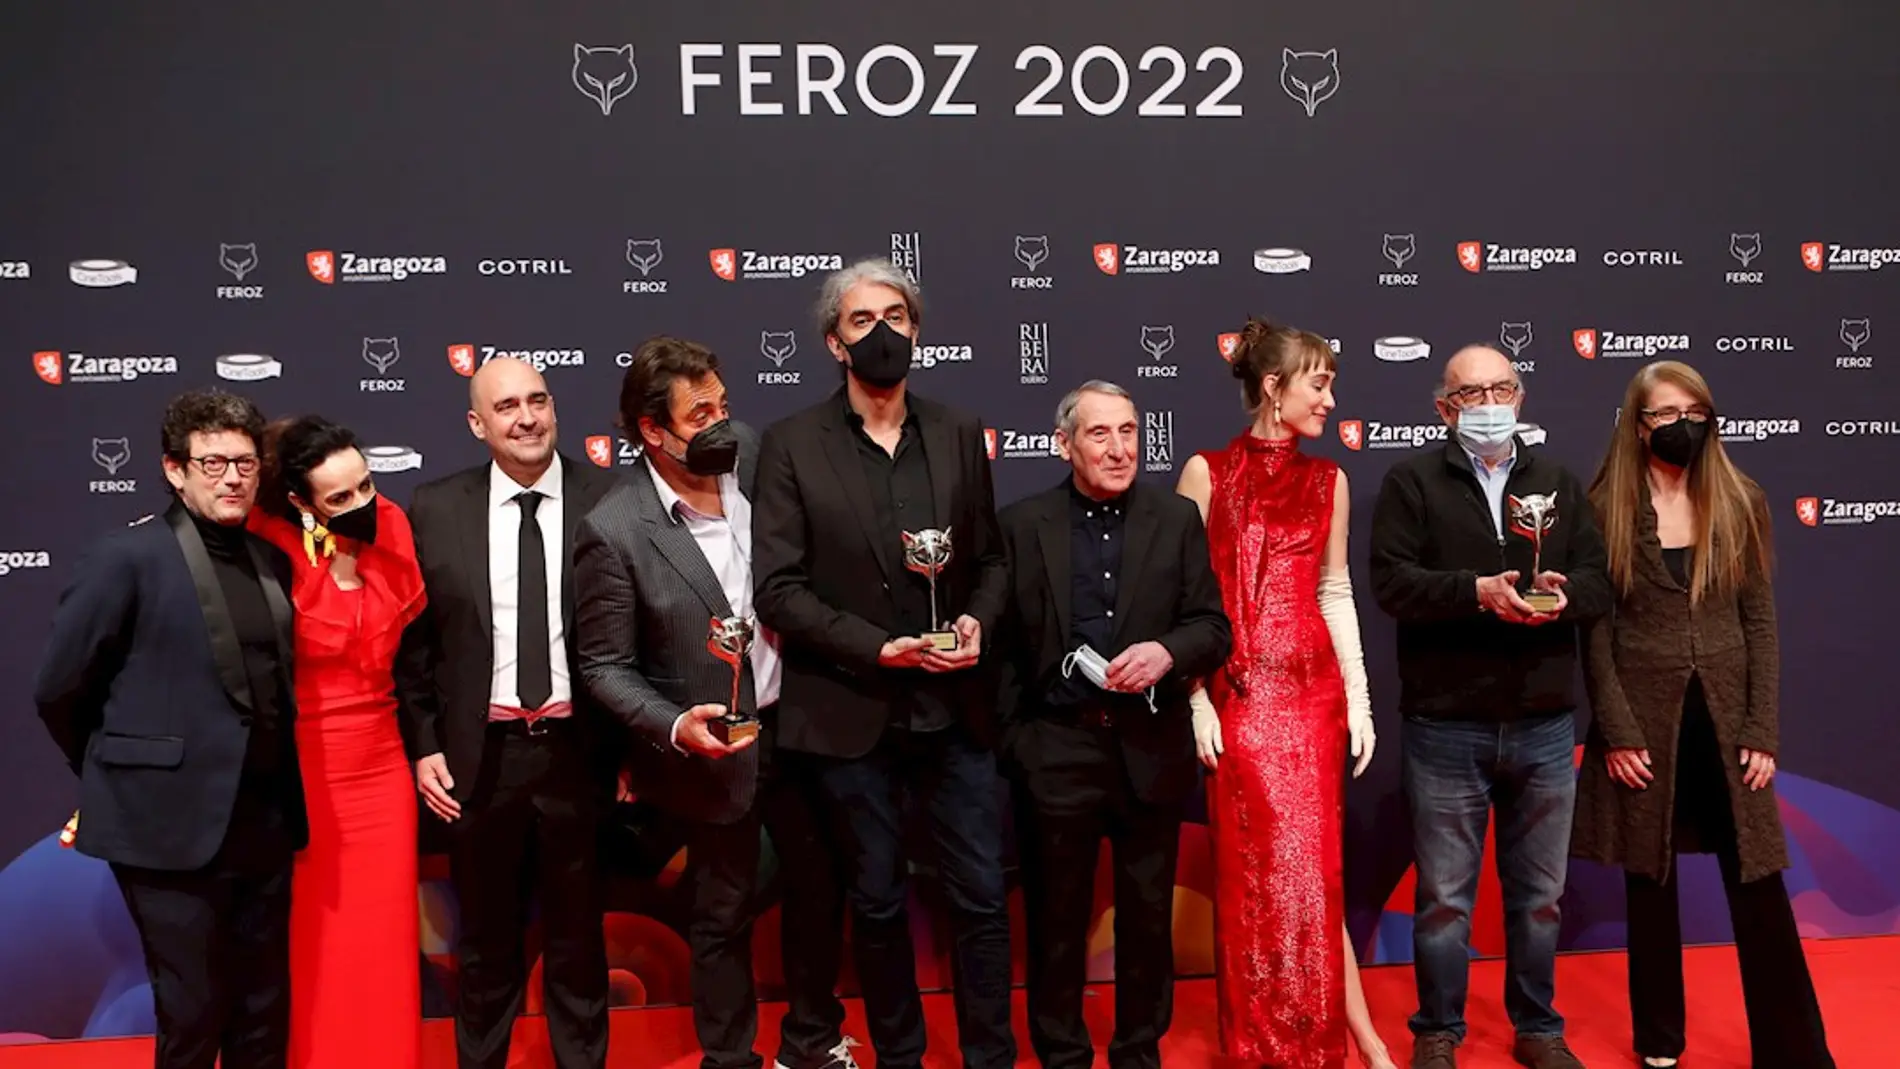 El equipo de la película "El buen patrón" posan con los premios recibidos durante la gala de la 9ª edición de los Premios Feroz 2022